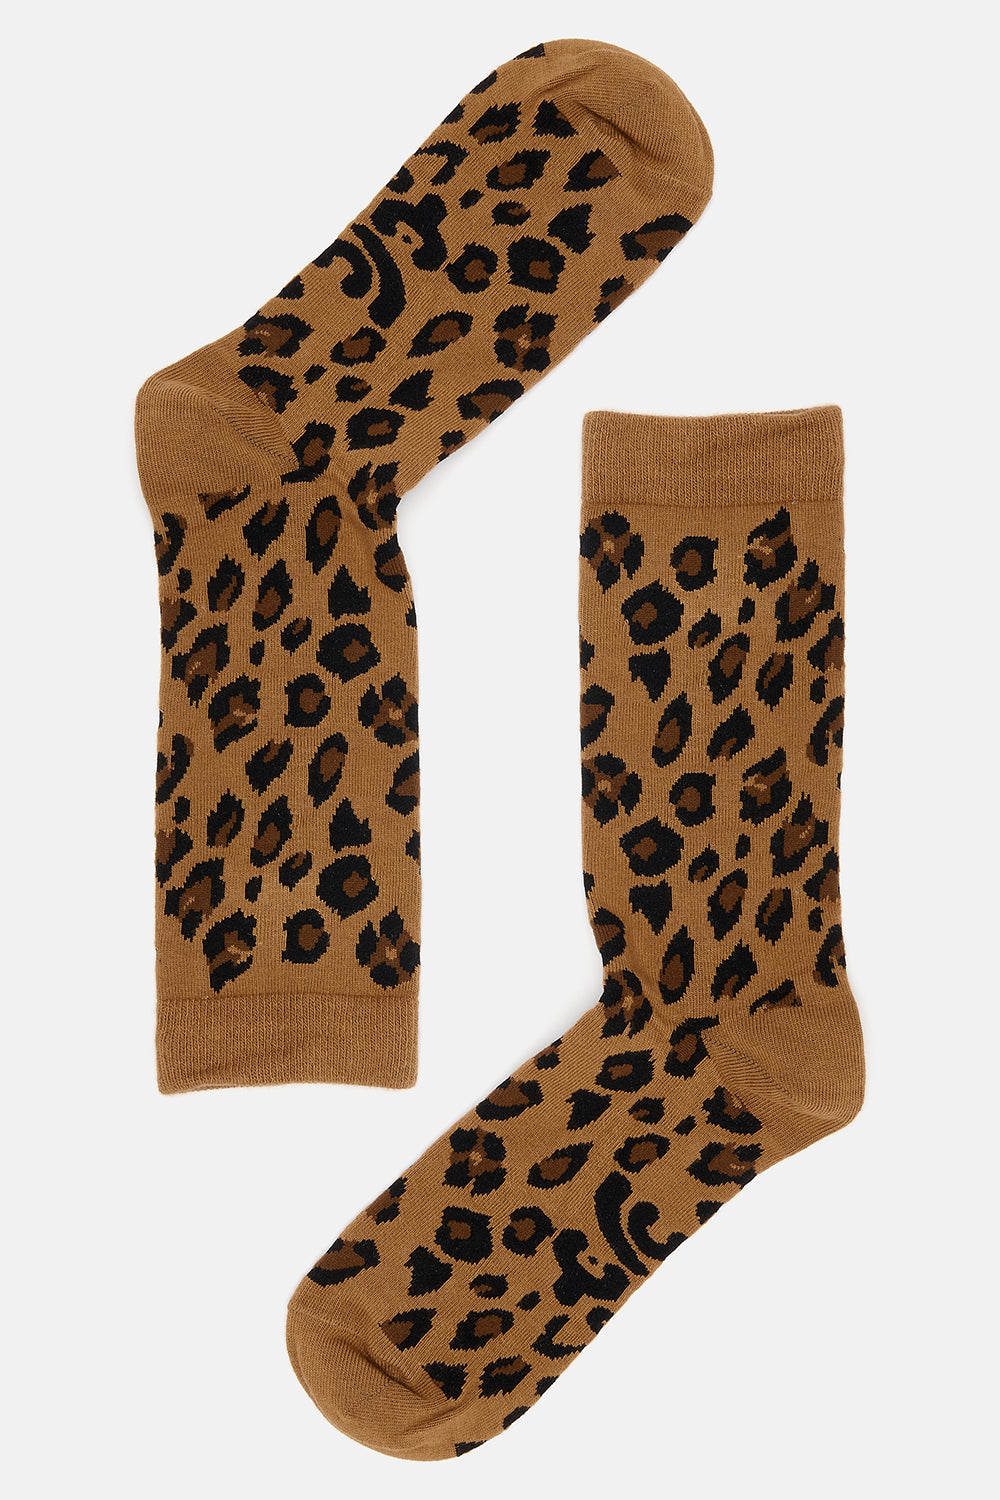 Leopard Print Socks - JoJo Design